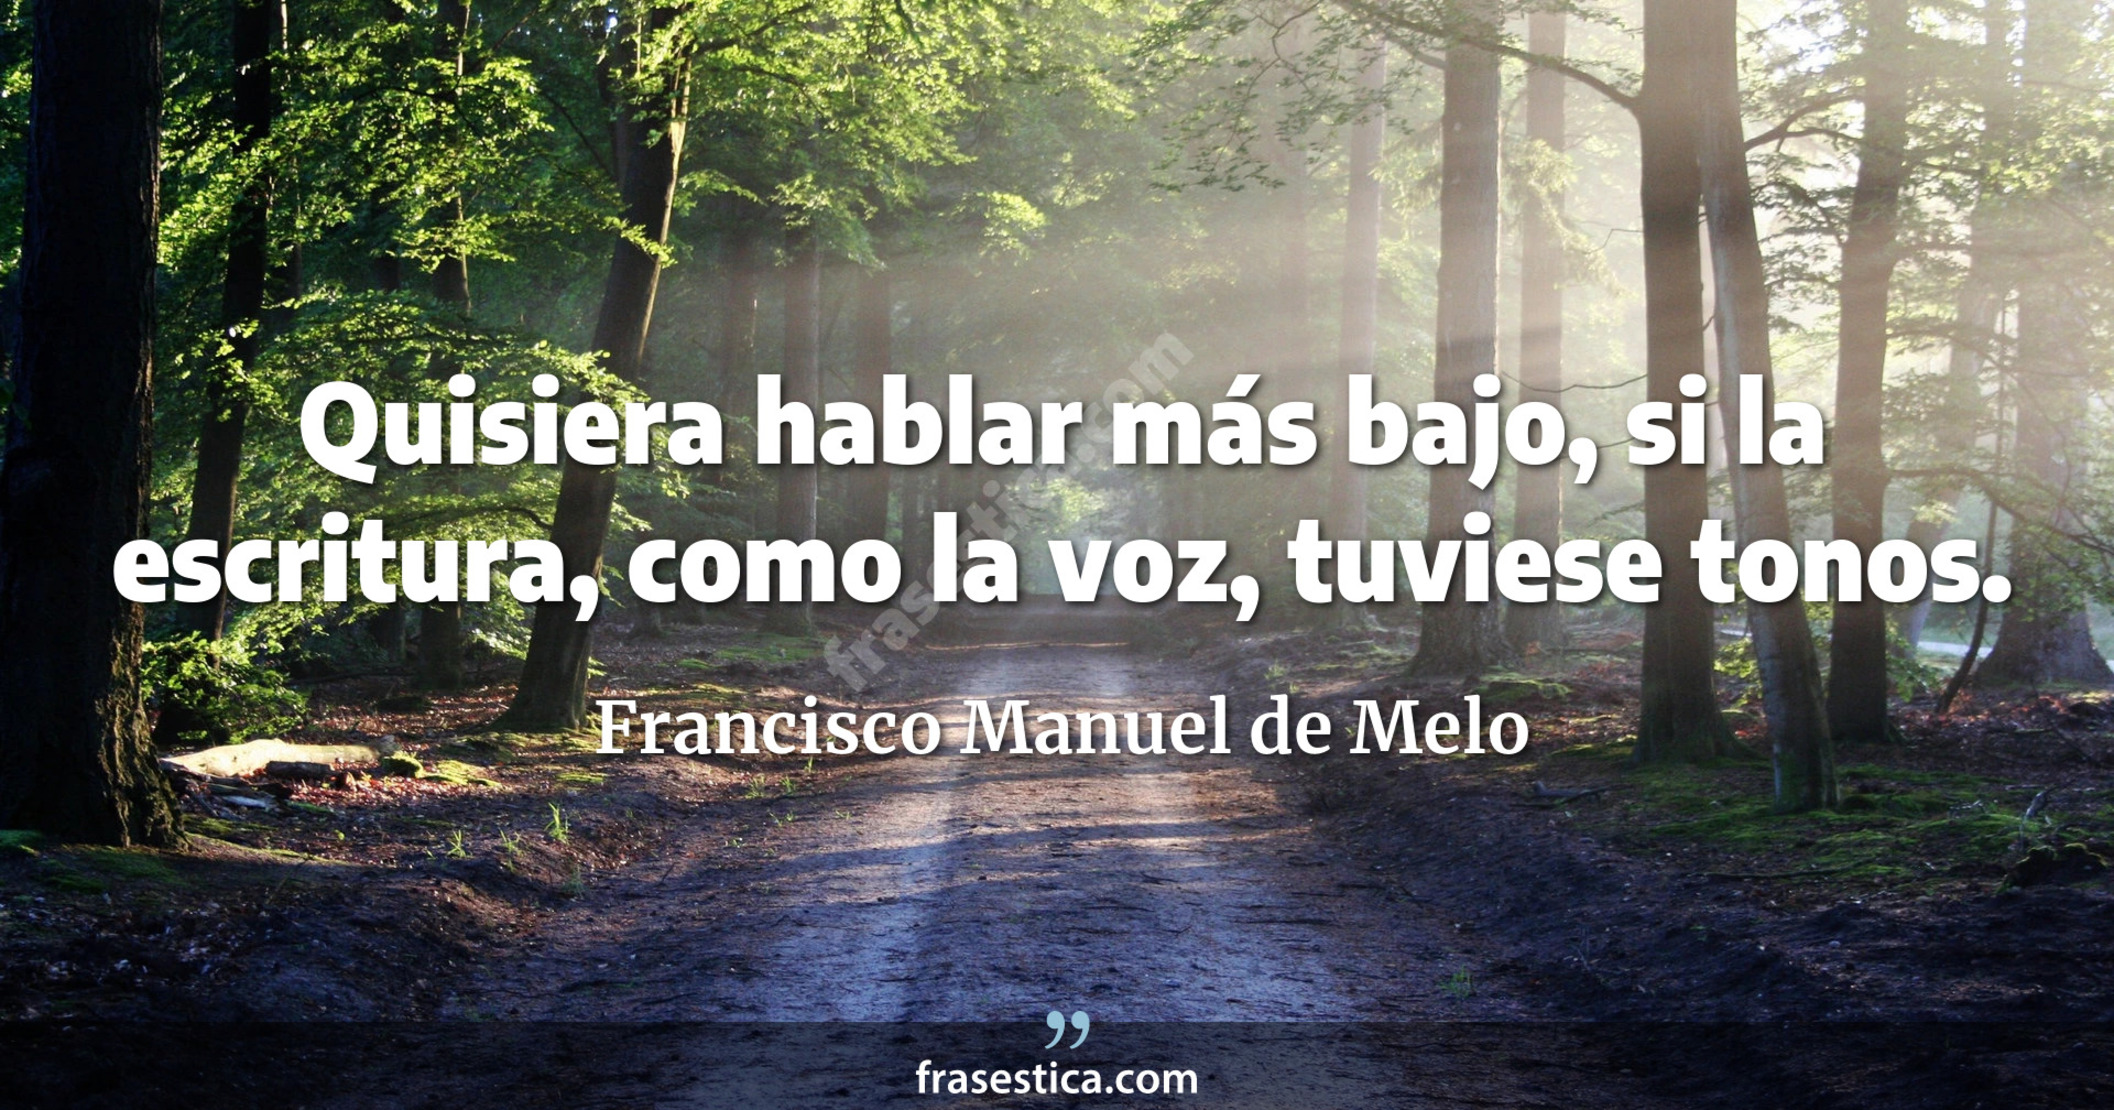 Quisiera hablar más bajo, si la escritura, como la voz, tuviese tonos. - Francisco Manuel de Melo